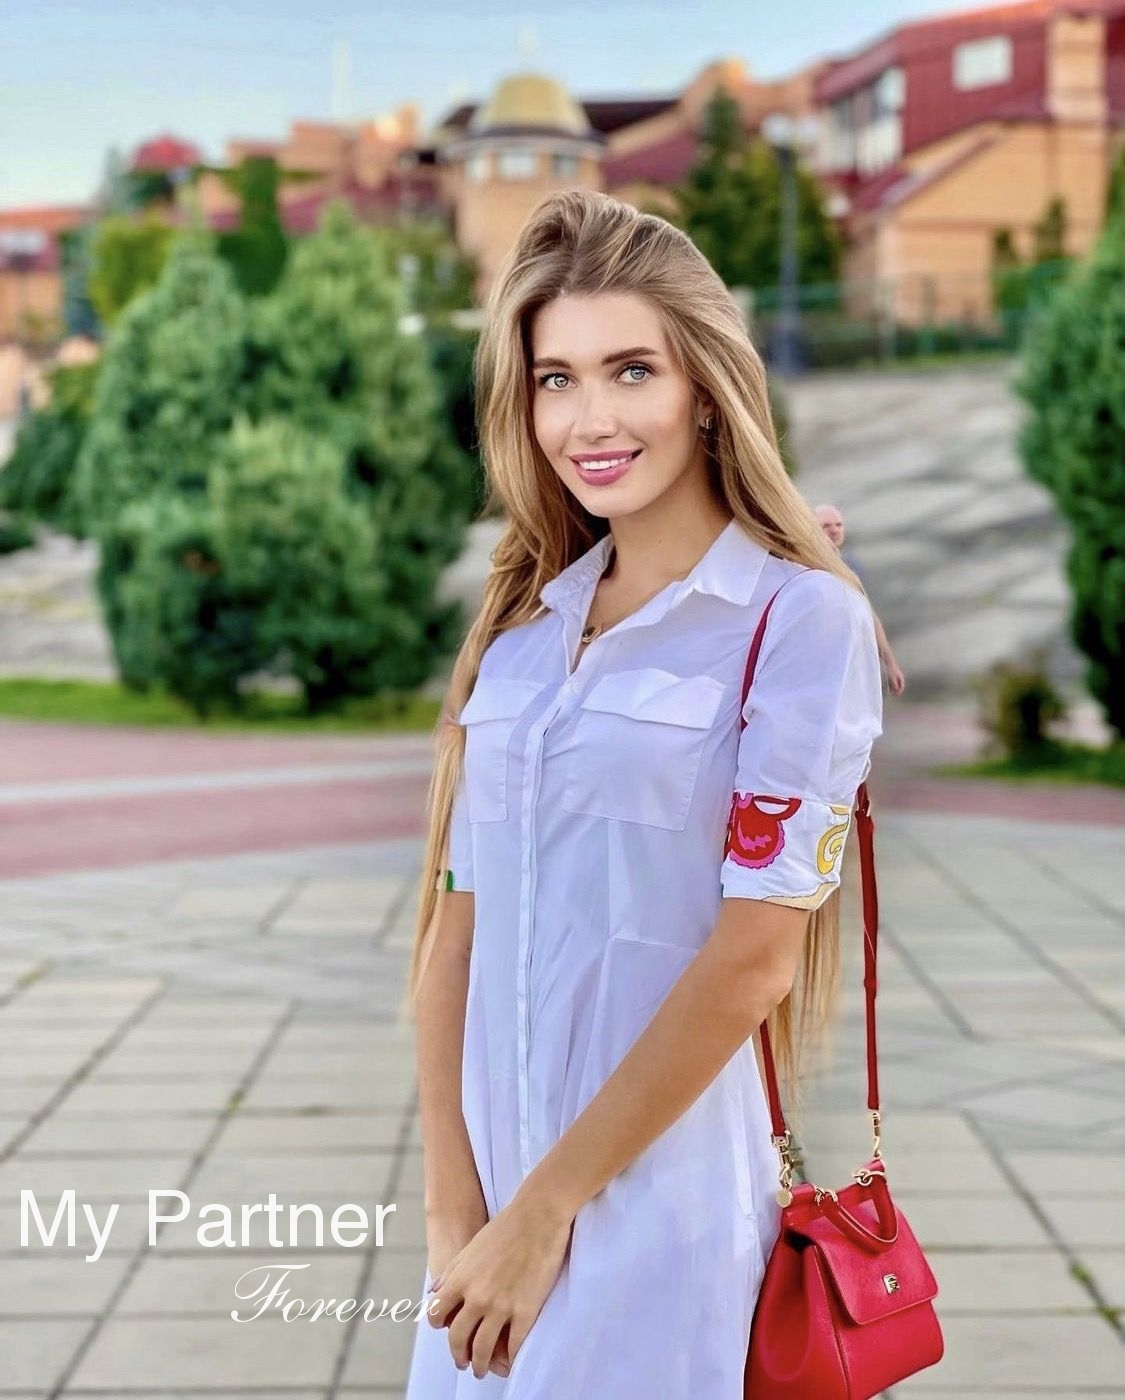 Single Lady from Ukraine - Alena from Kiev, Ukraine